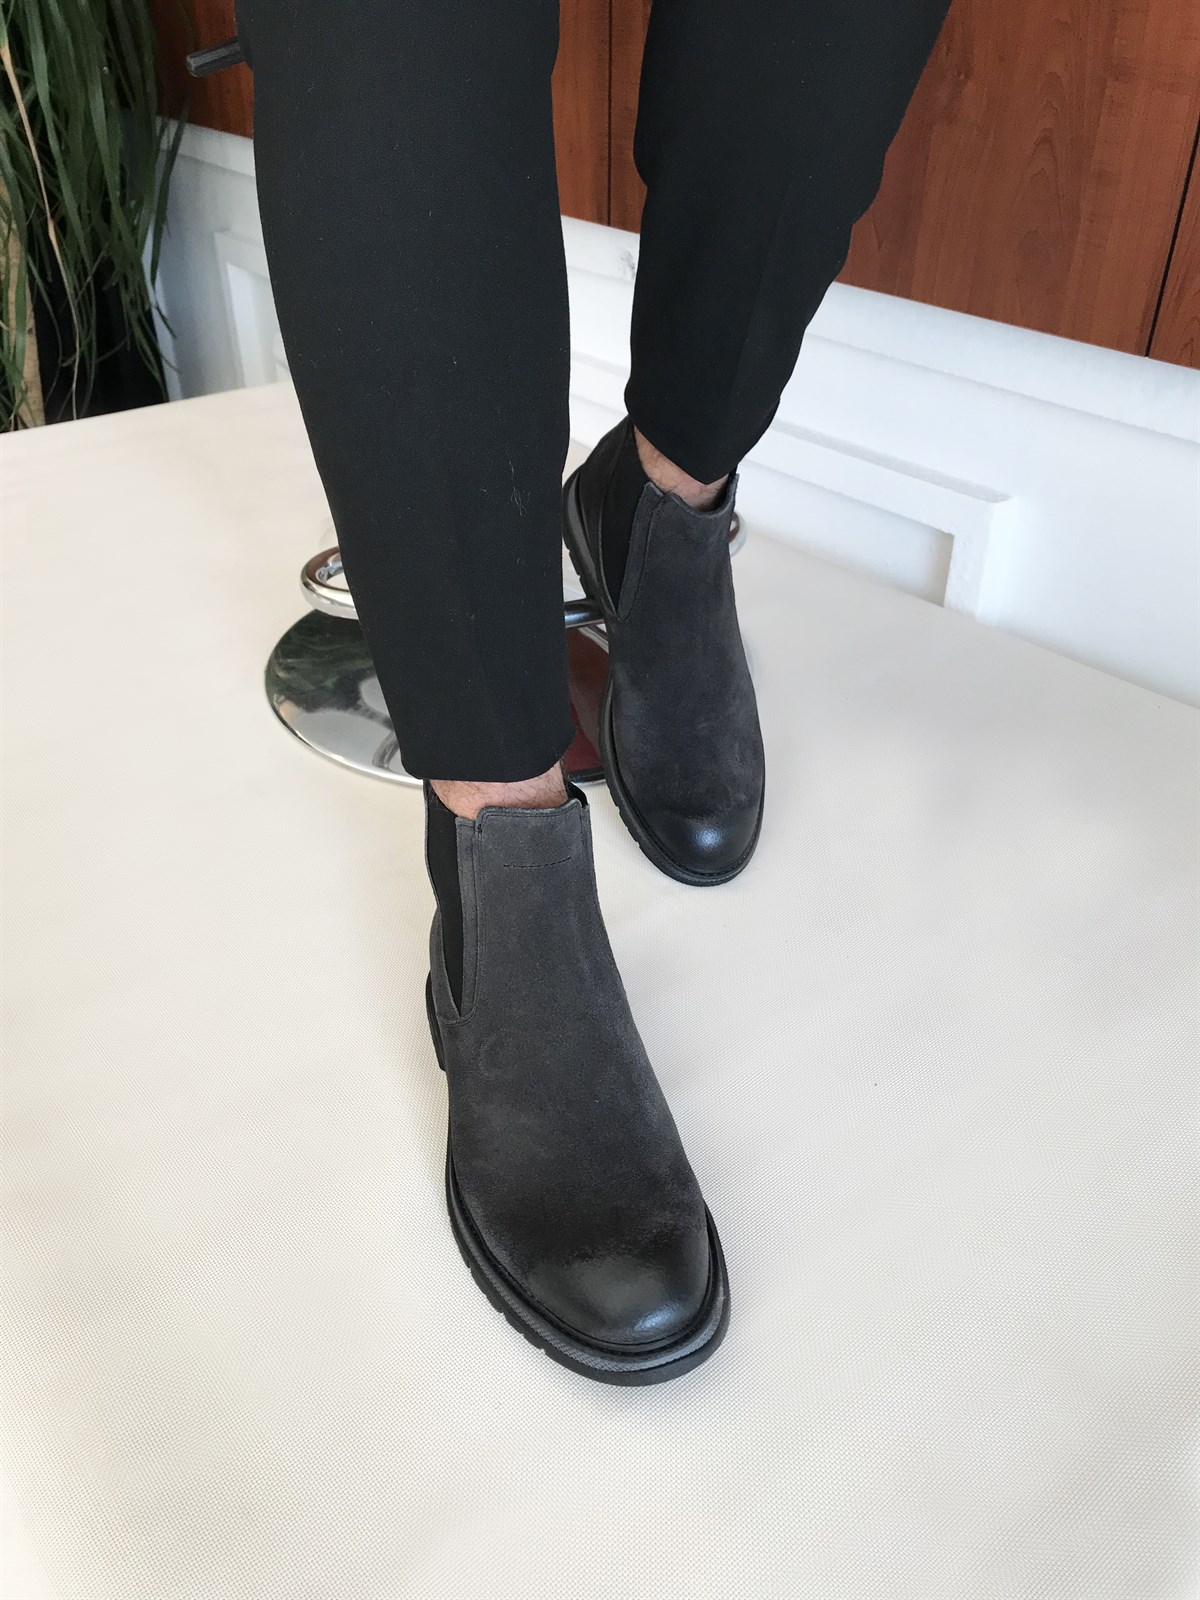 İtalyan stil iç dış naturel deri kışlık erkek bot ayakkabı Antrasit T6554